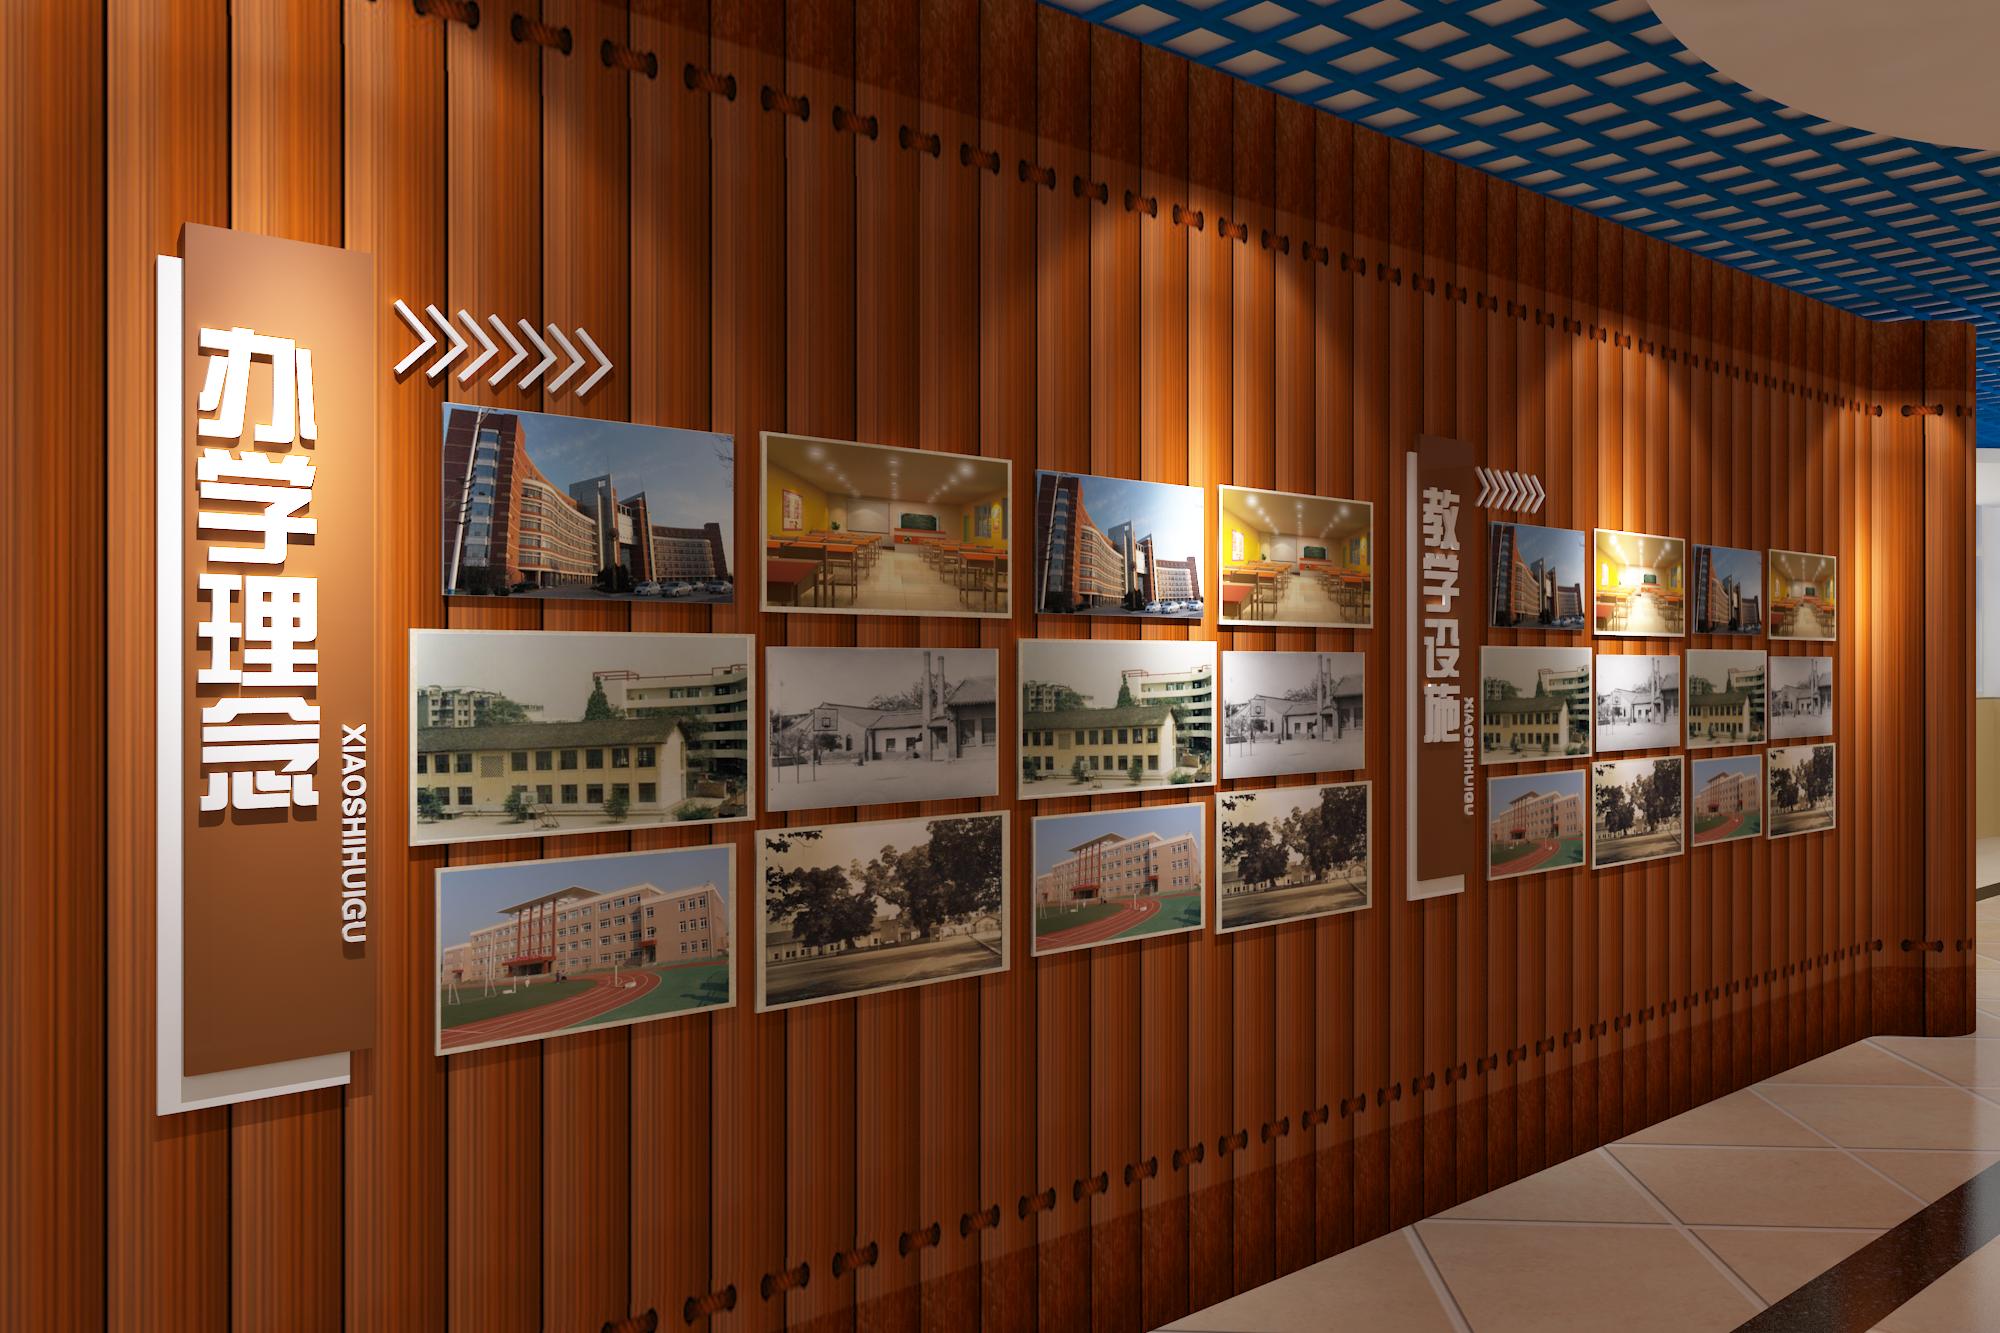  校园展厅设计|党建文化设计|展馆设计|3D效果图设计|1396me皇家世界广告公司